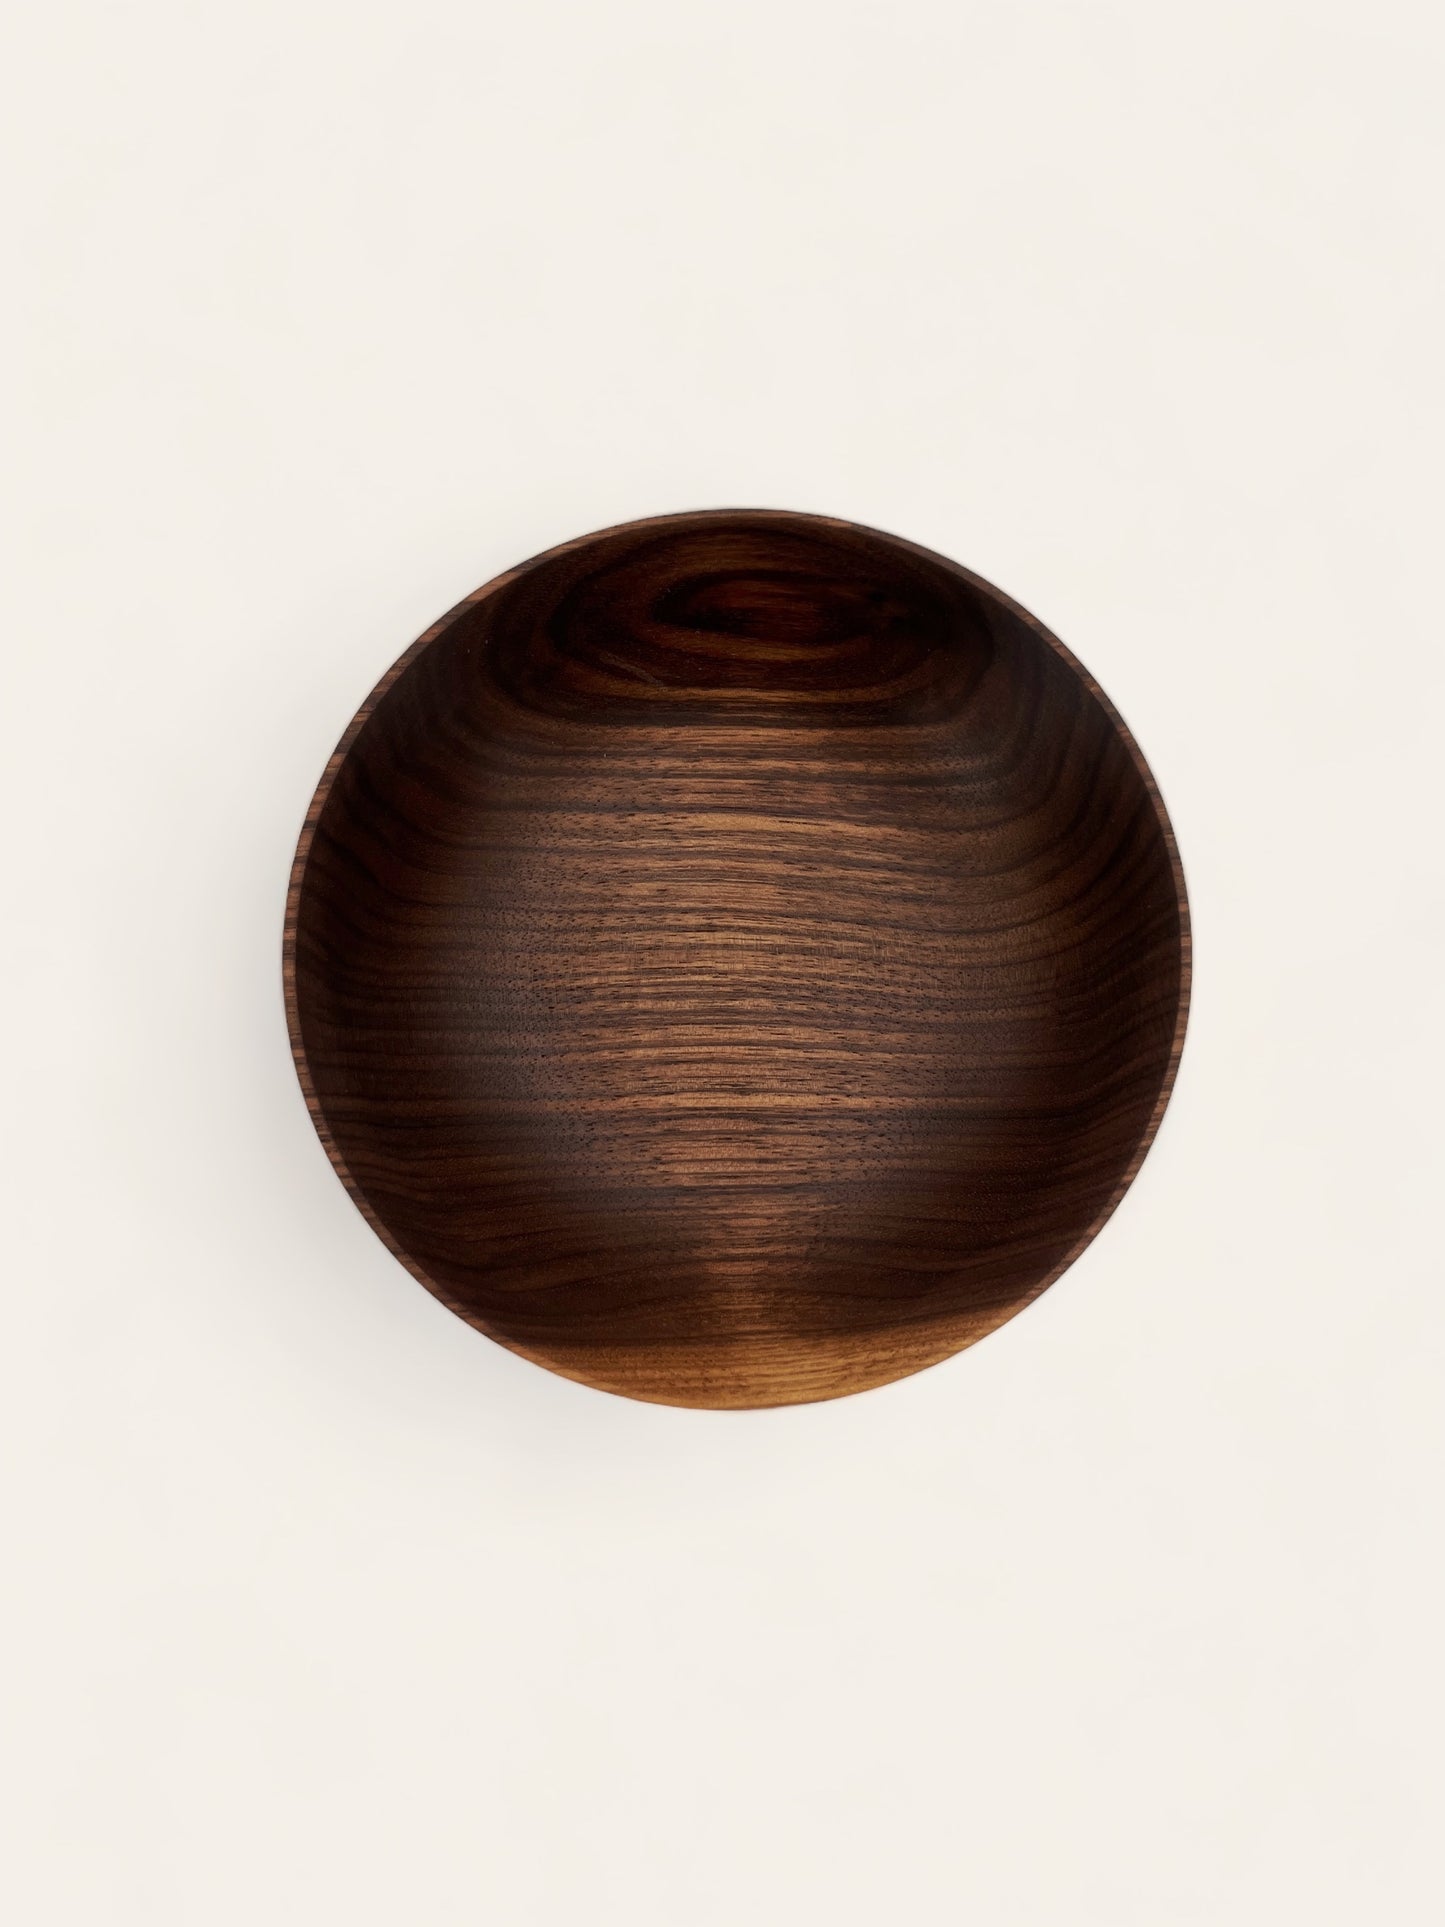 Little walnut bowl